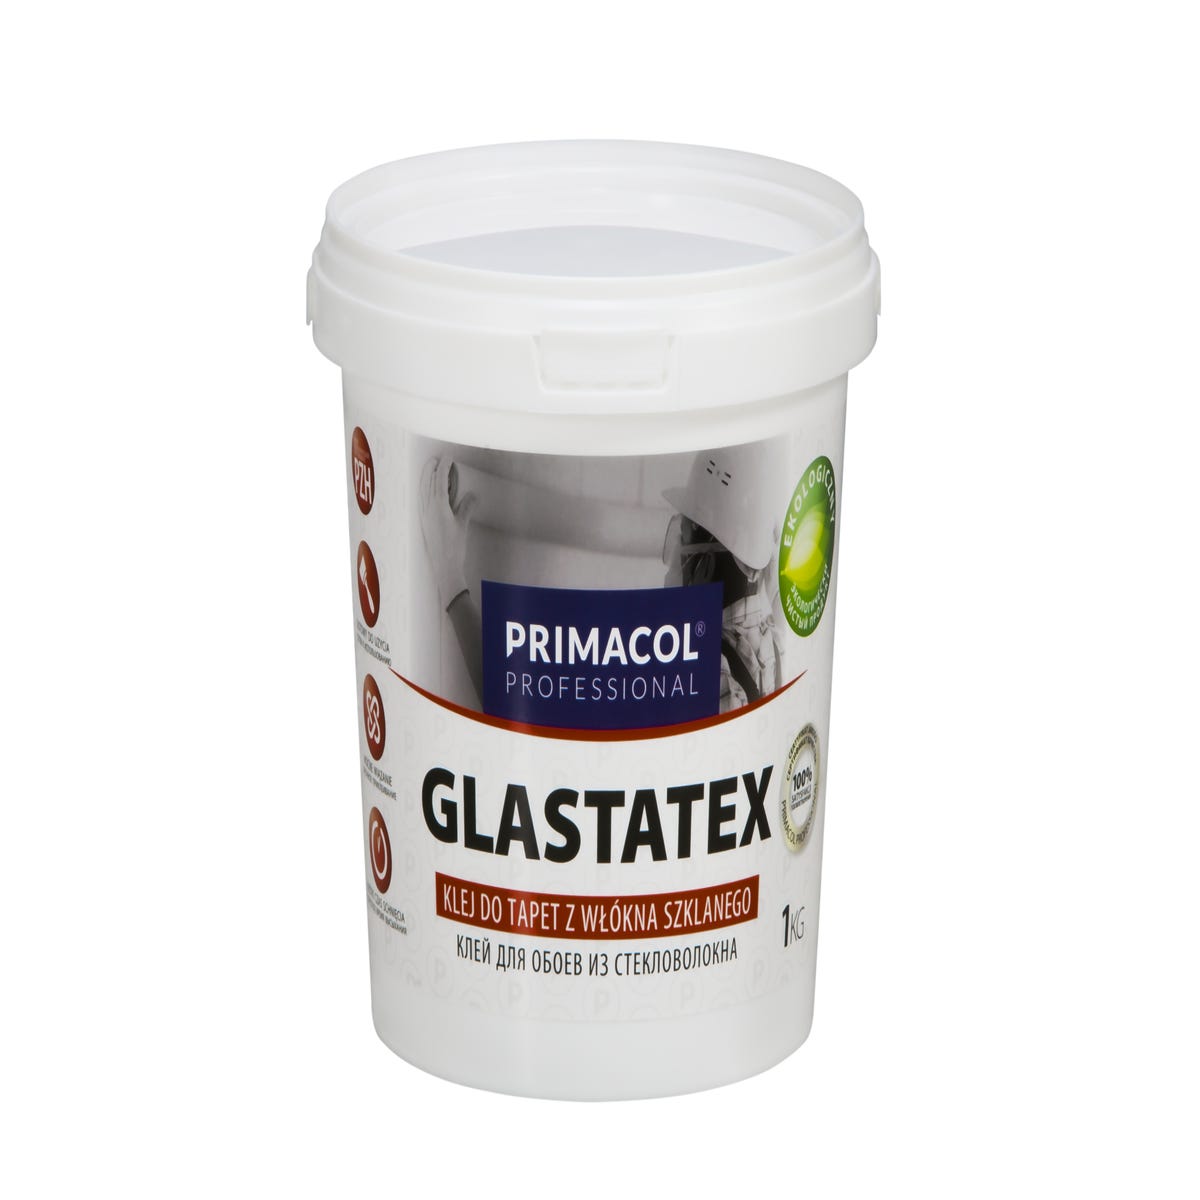 Zdjęcia - Płytka Klej do tapet z włókna szklanego Glastatex 1 kg Primacol